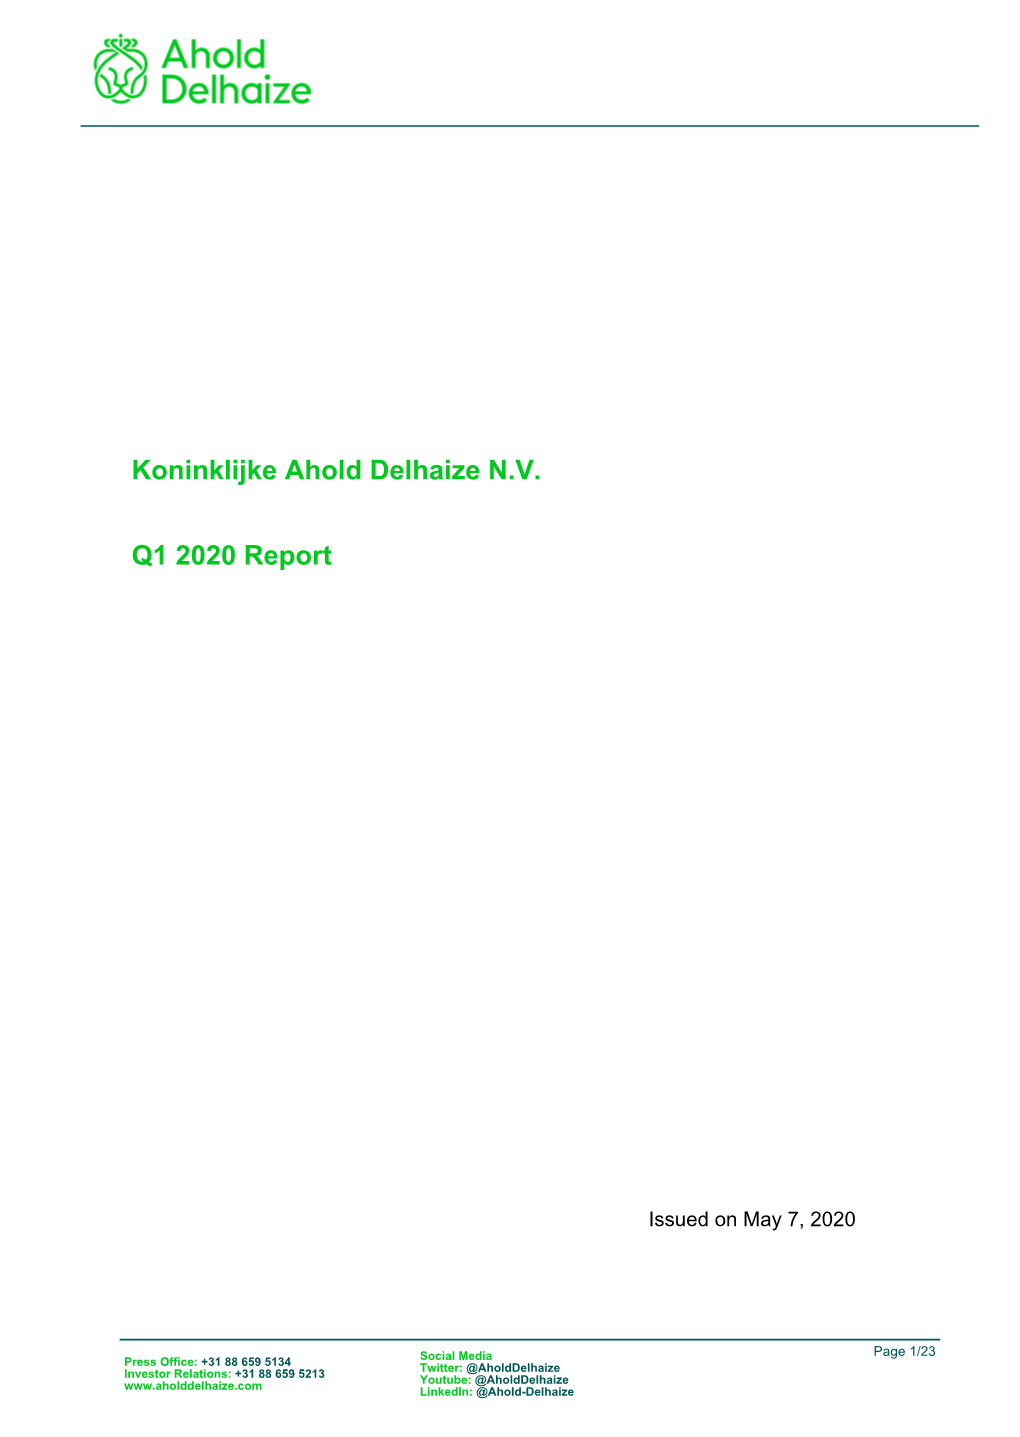 Koninklijke Ahold Delhaize N.V. Q1 2020 Report